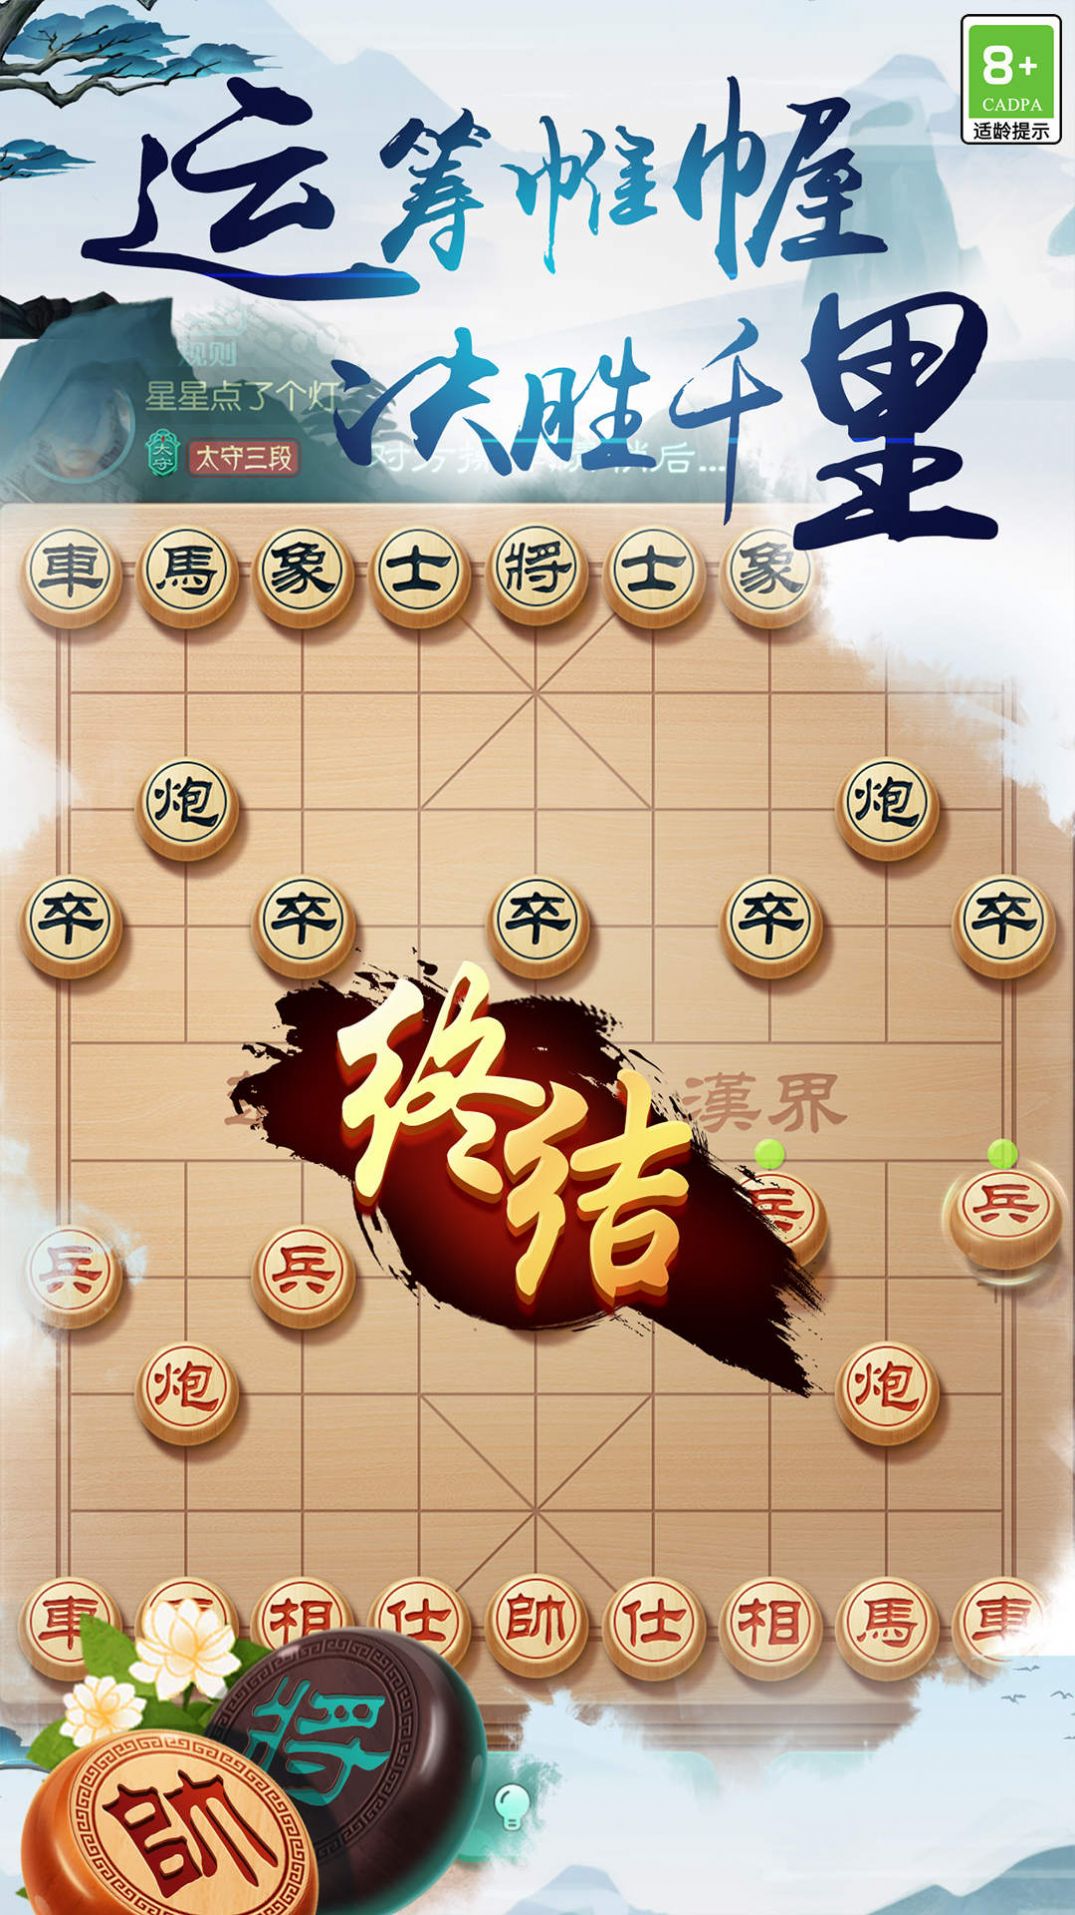 中国象棋之战旧版本